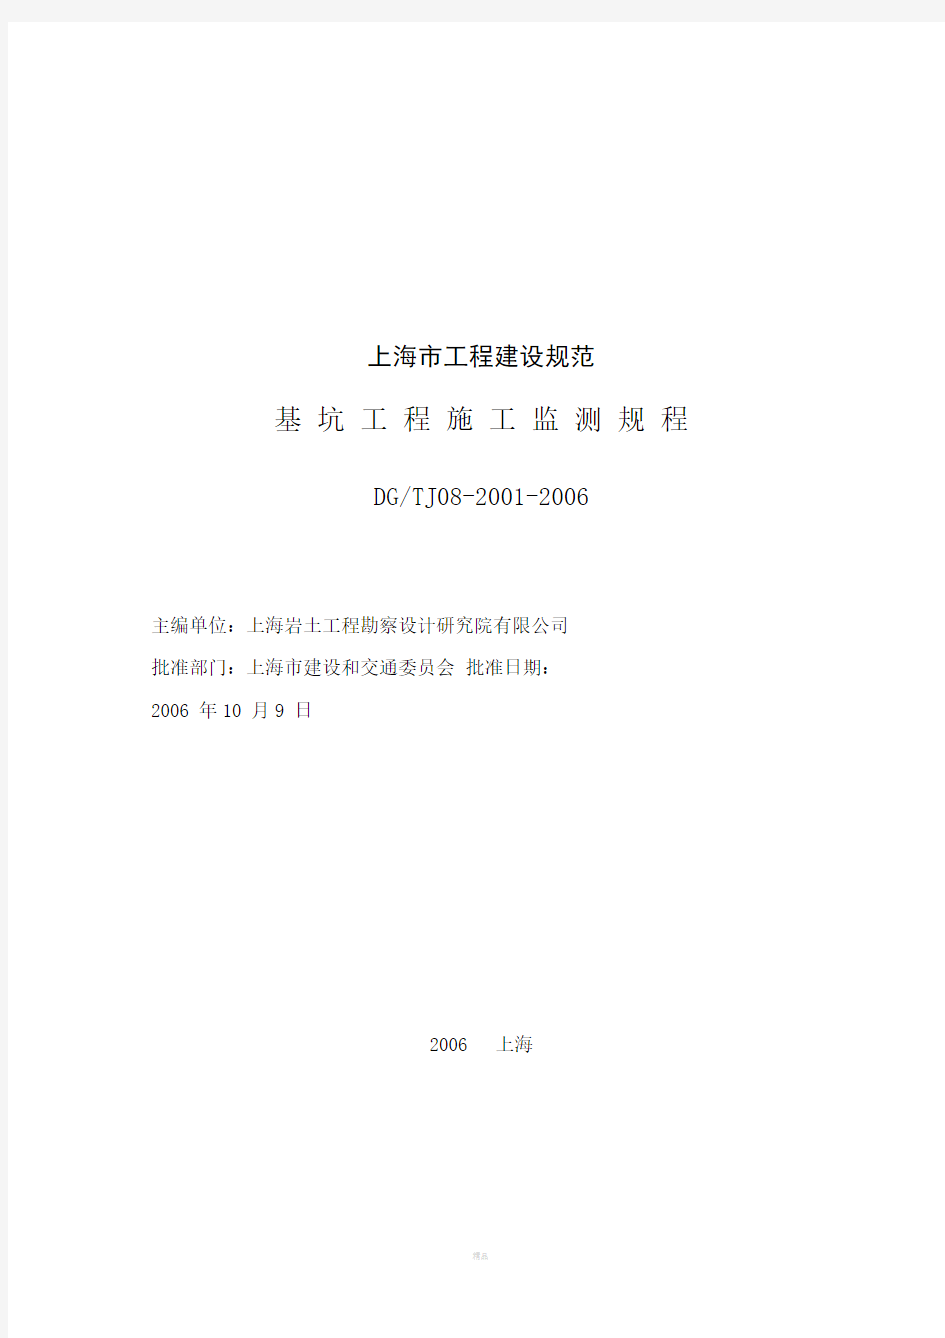 上海市工程建设规范基坑工程施工监测规程DGTJ